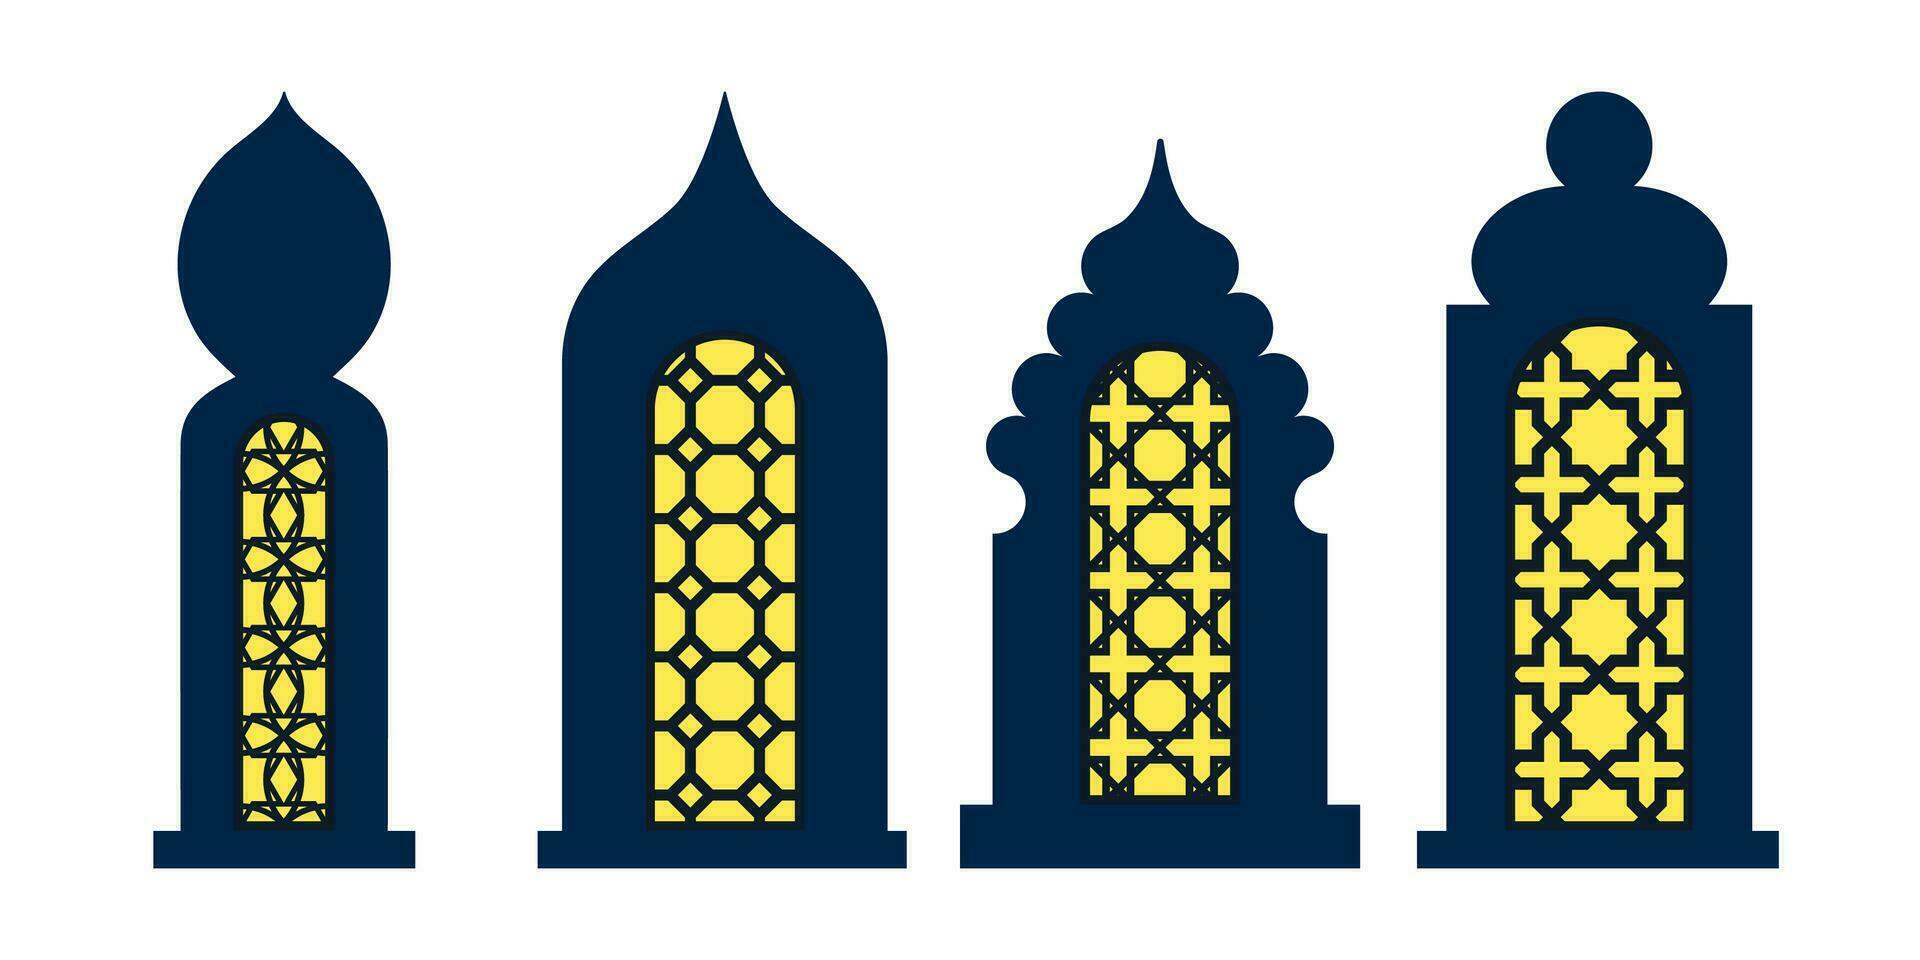 colección de árabe oriental ventanas, arcos y puertas láser cortar parrilla. moderno diseño en negro fo marcos mezquita Hazme y linternas islámico Ramadán kareem y eid Mubarak estilo. vector ilustración